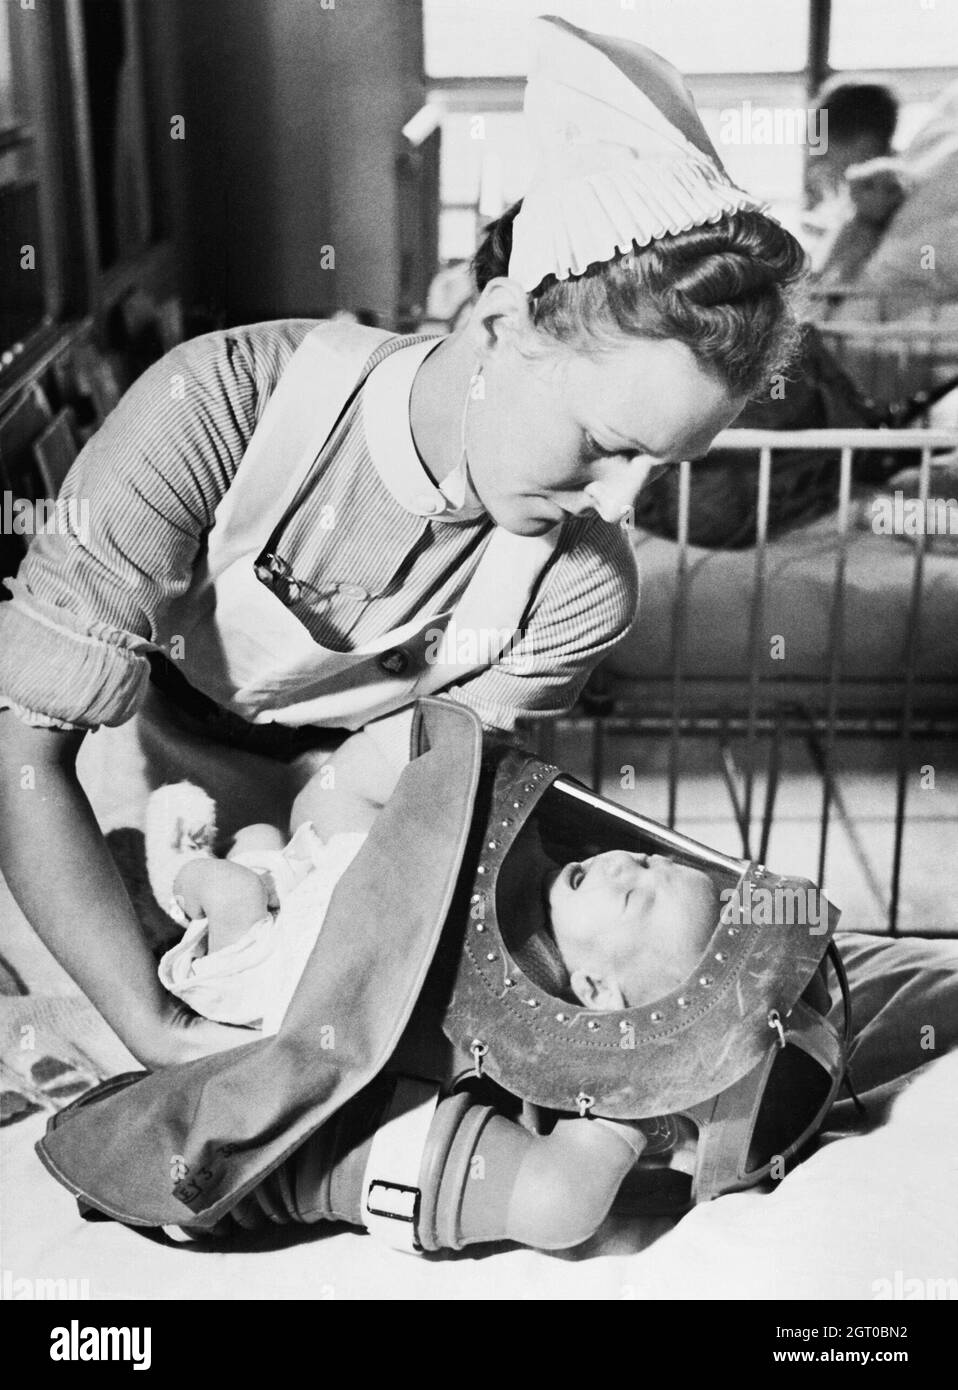 Une infirmière place un bébé qui pleure dans son respirateur de gaz lors d'un exercice dans un hôpital de Londres en 1940. Banque D'Images